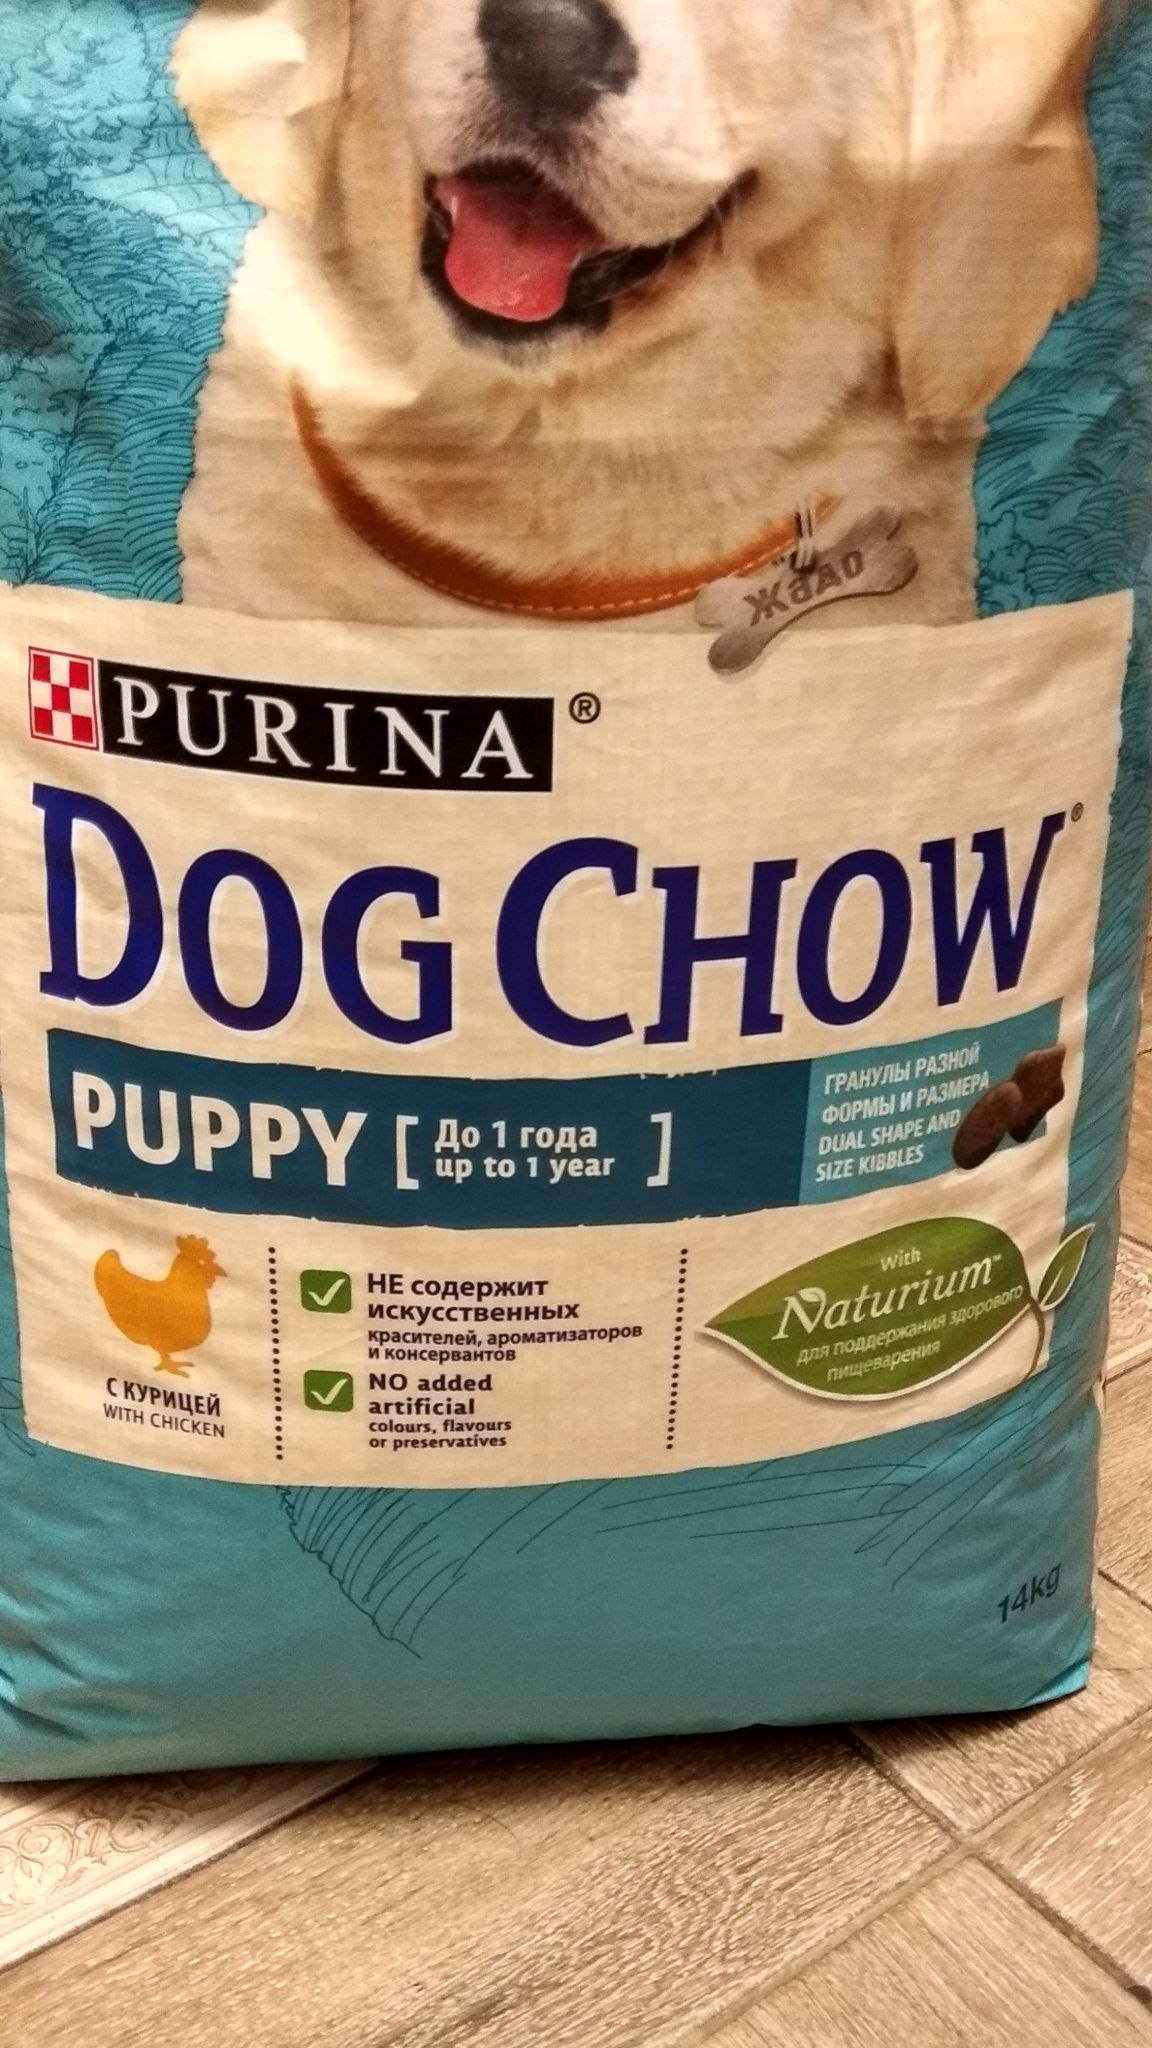 Купить корм для собаки 14 кг. Dog Chow корм для щенков. Корм Пурина дог шоу. Dog Chow корм для щенков крупных пород. Дог чау корм для собак 14 кг.